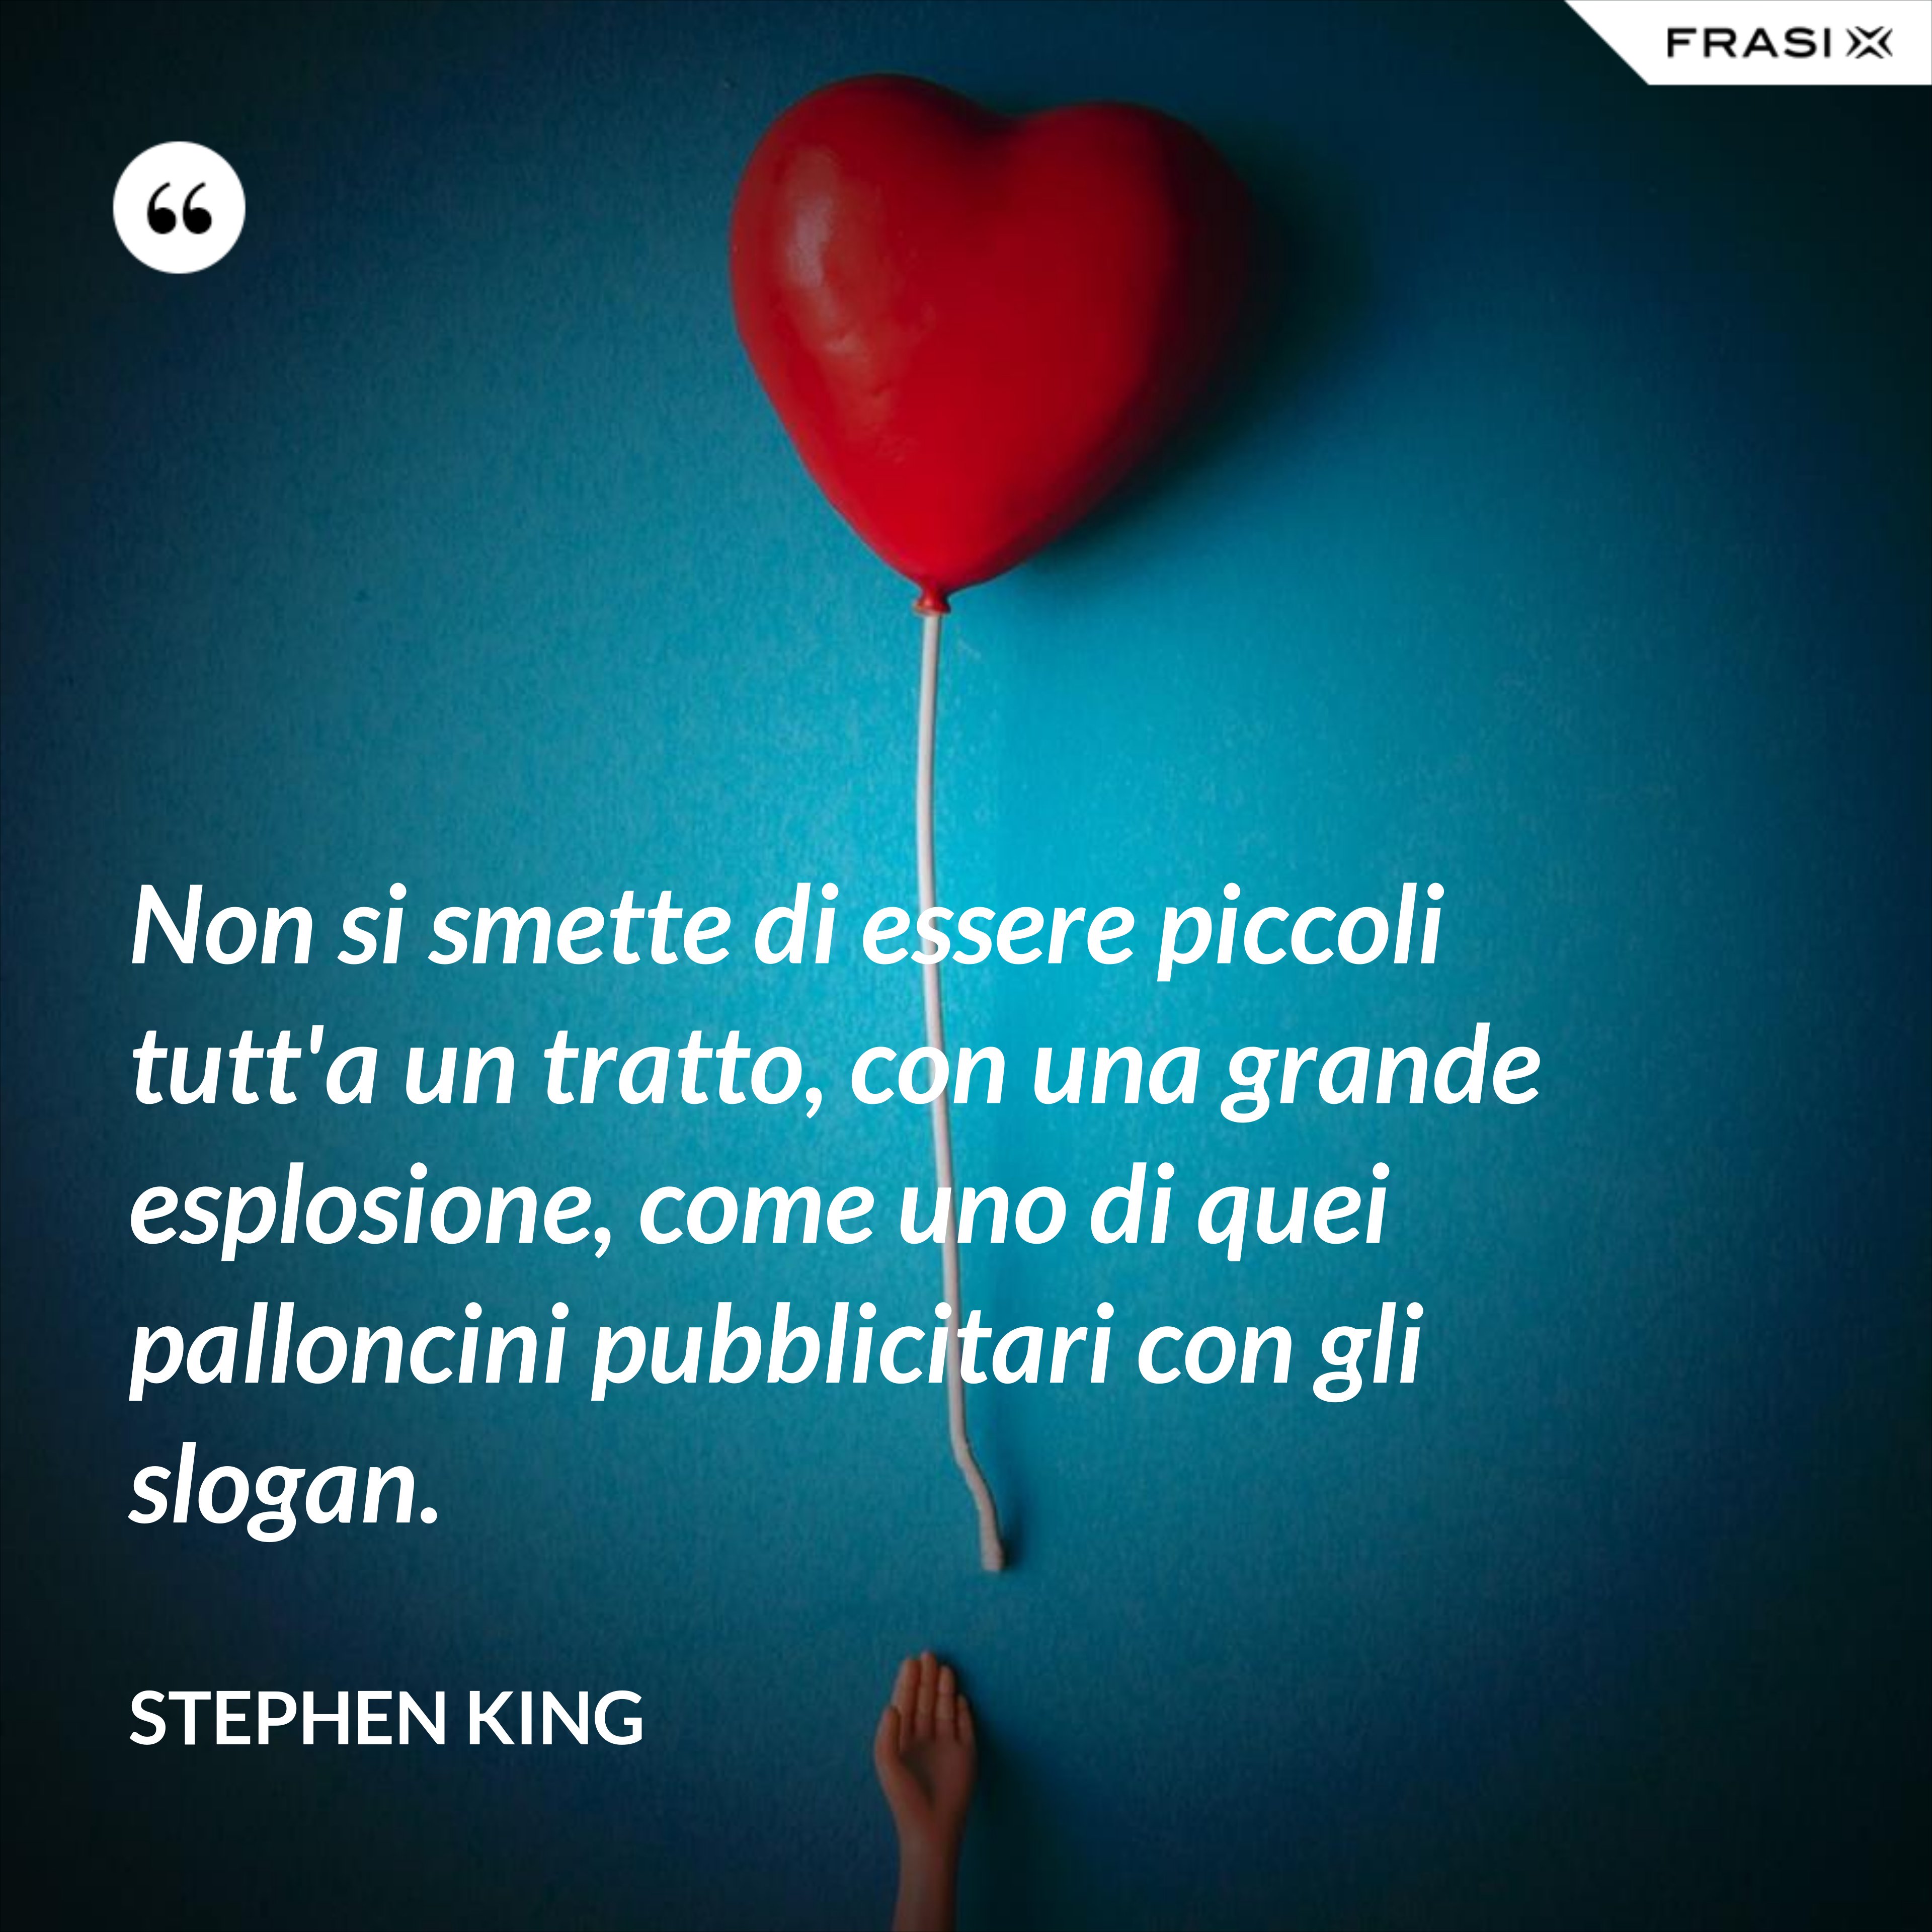 Non si smette di essere piccoli tutt'a un tratto, con una grande esplosione, come uno di quei palloncini pubblicitari con gli slogan. - Stephen King